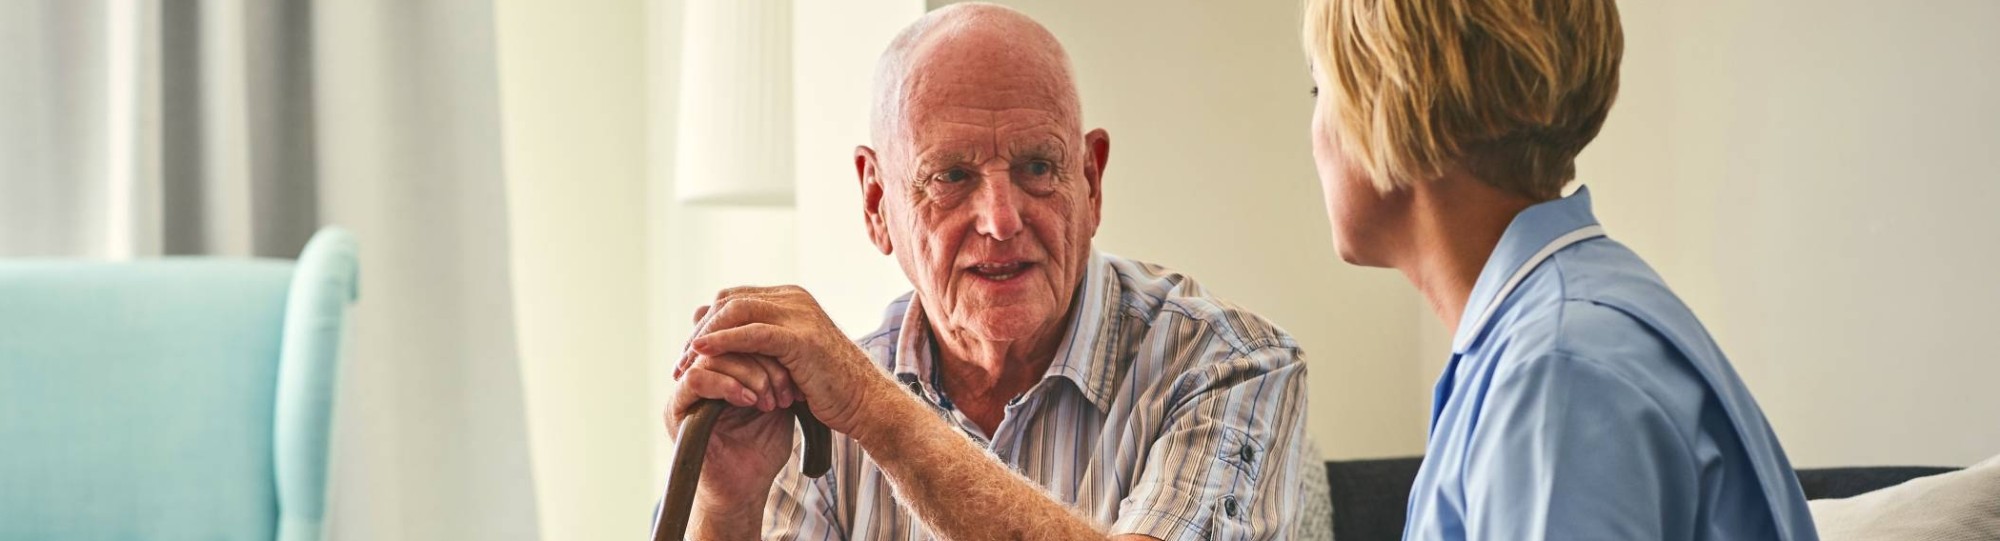 Medewerkster huisartsenzorg in gesprek met kwetsbare oudere over verbetering in de zorg